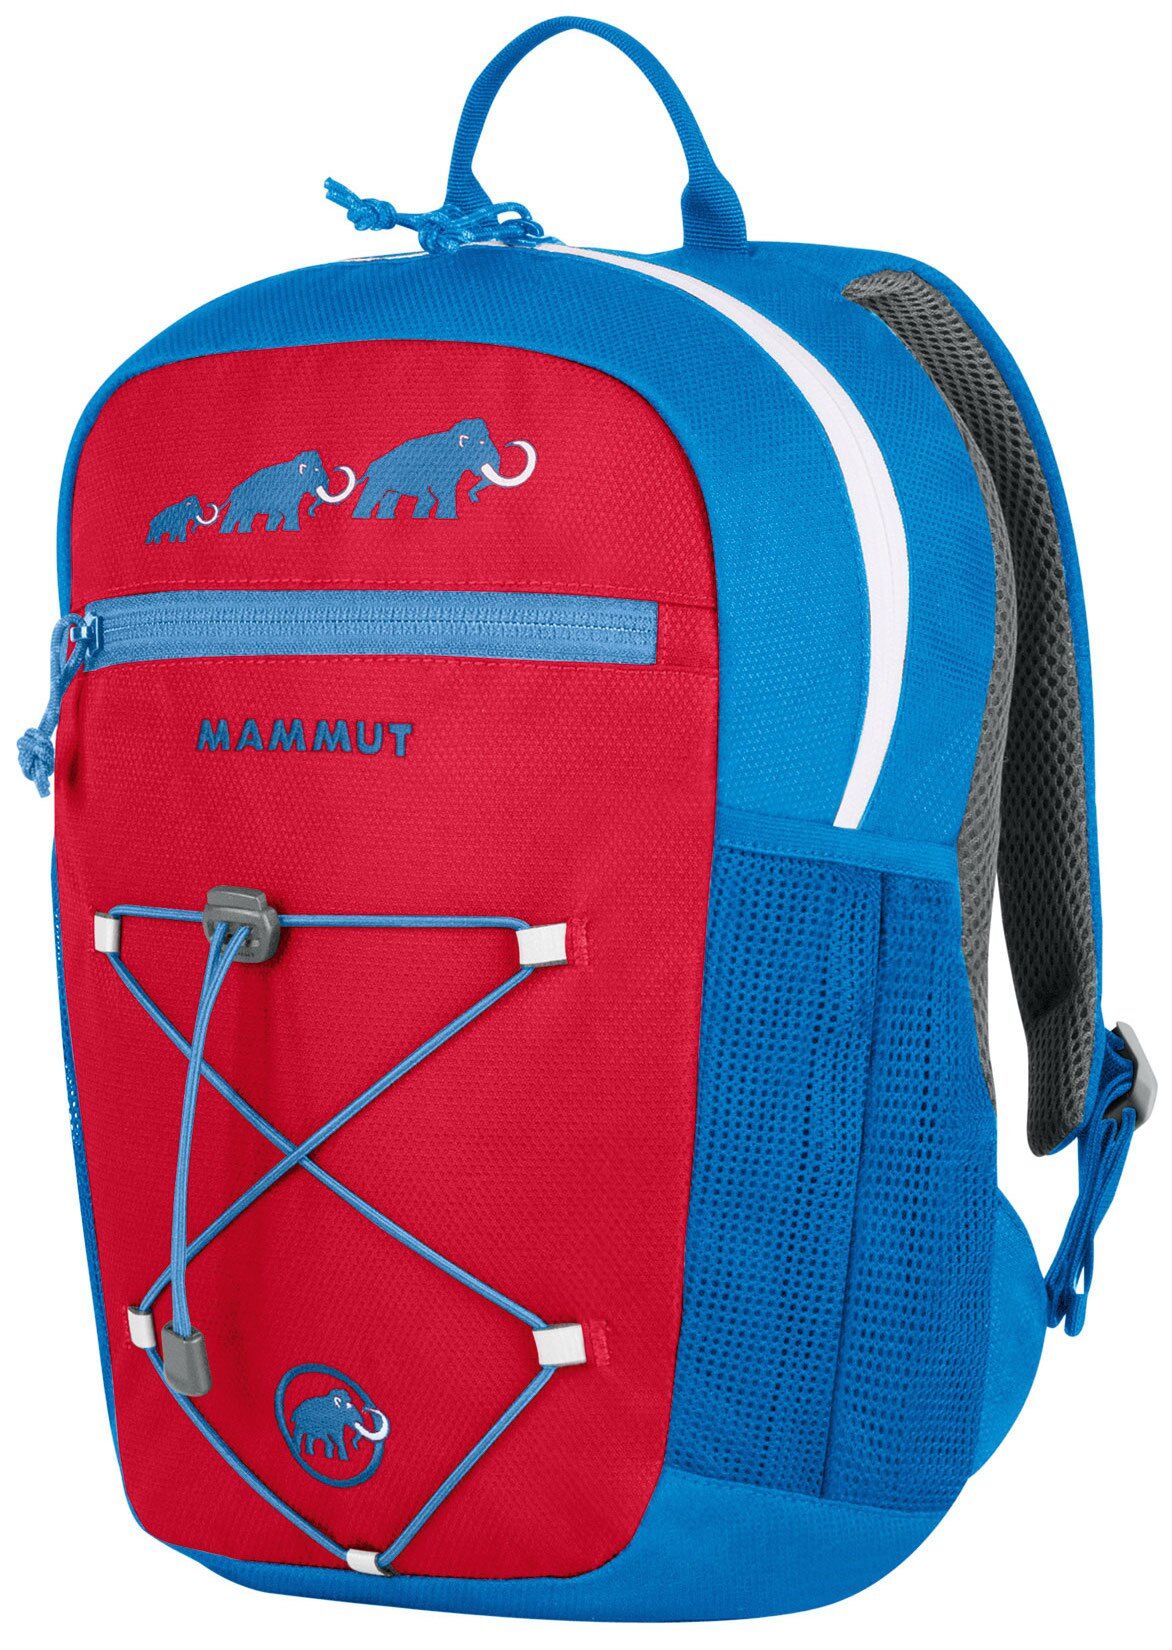 Mammut - First Zip - Backpack - Kids